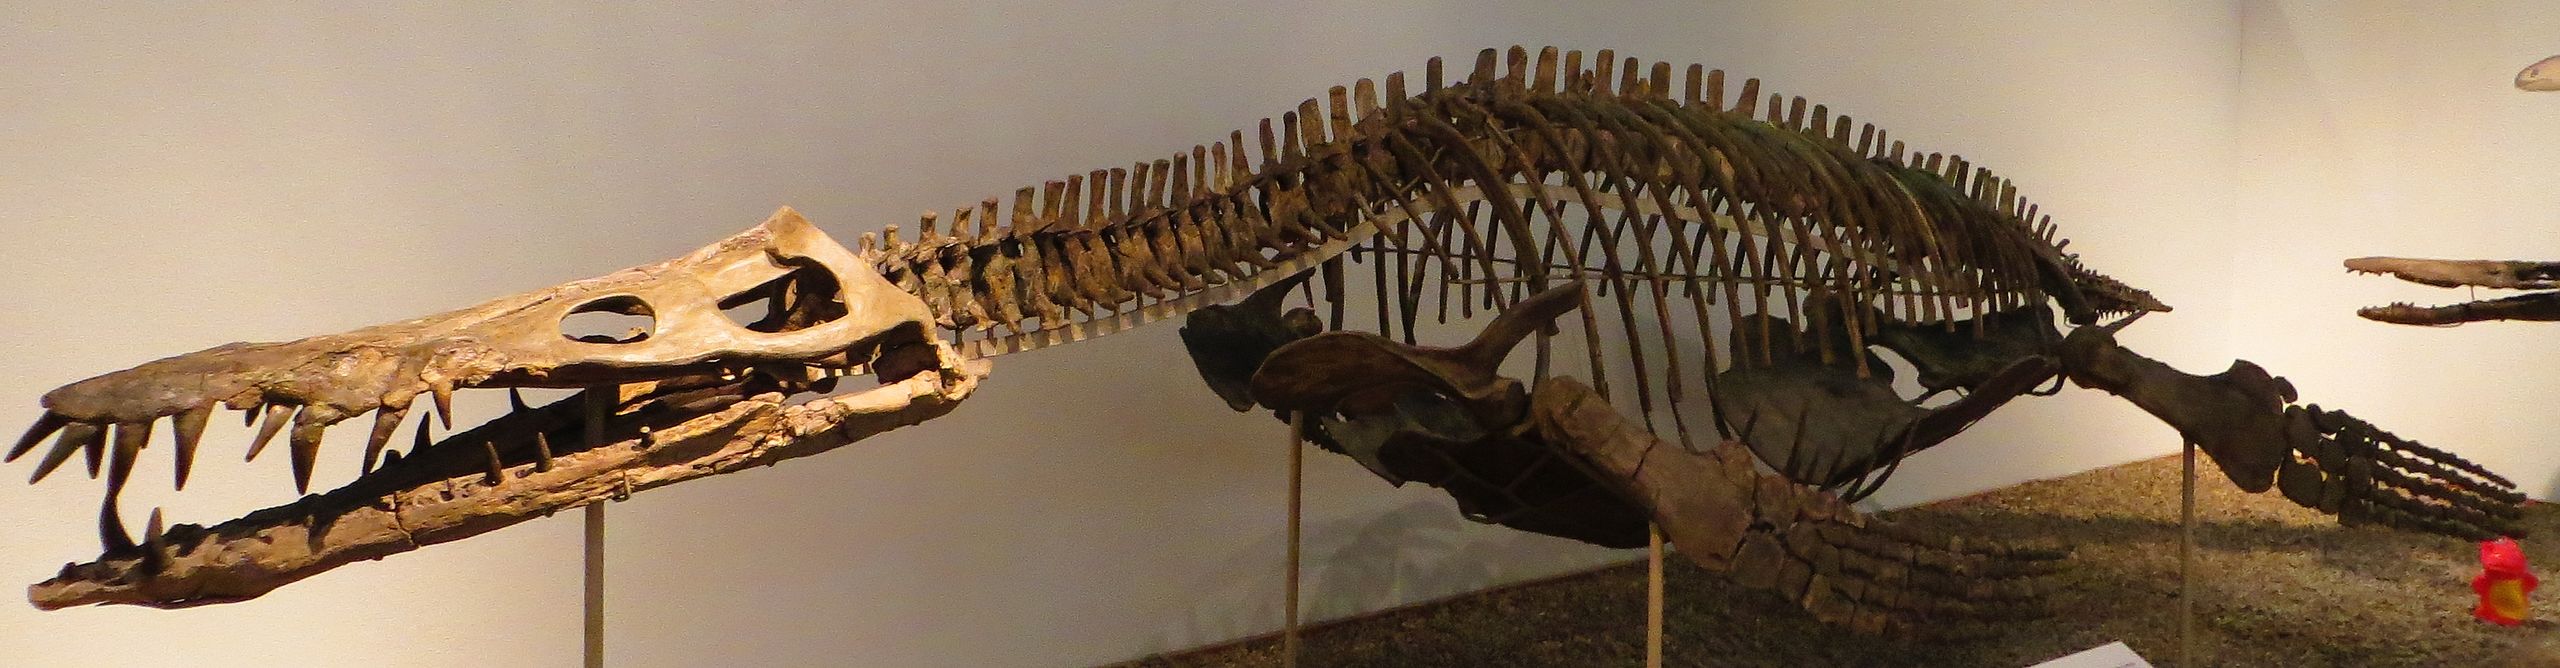 Kostra liopleurodona byla z anatomického hlediska typická pro pliosauridy. Dlouhý a nízký profil těla doplňovala rovněž dlouhá a nízká lebka s velkými zuby, mohutný kratší krk, silné ploutvovité končetiny a relativně krátký ocas. Kredit: Ghedoghedo; 